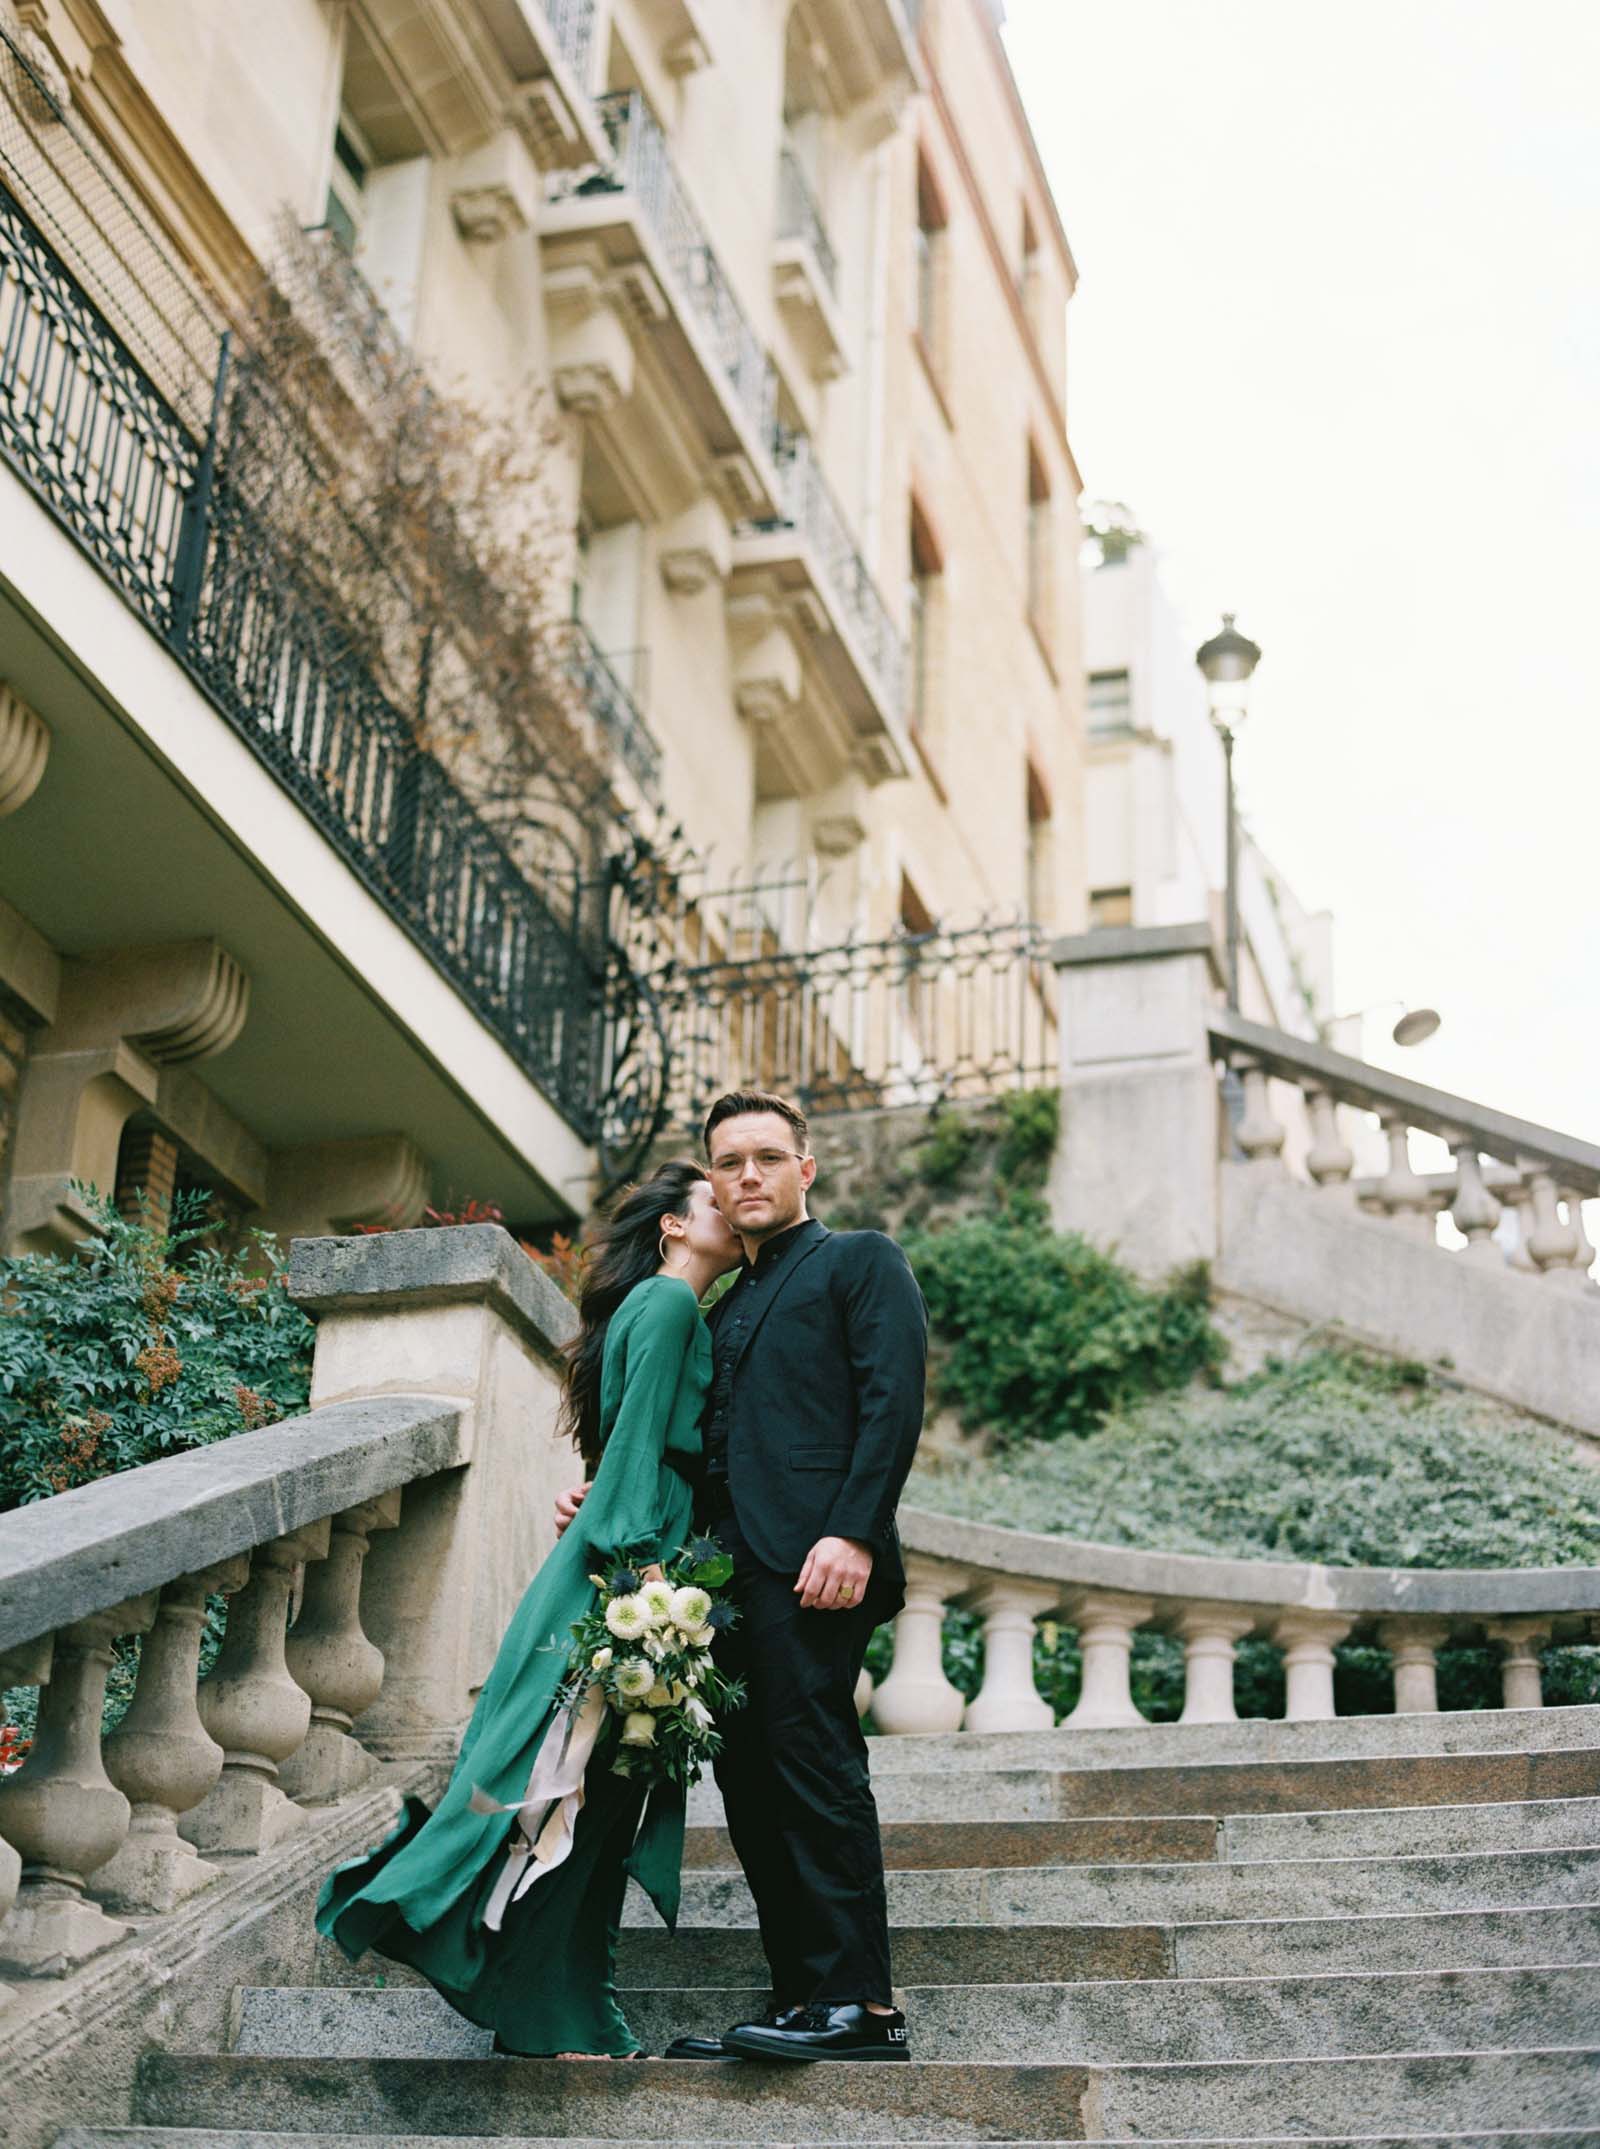 Romantic Engagement Photos - Paris, France - KR Moreno